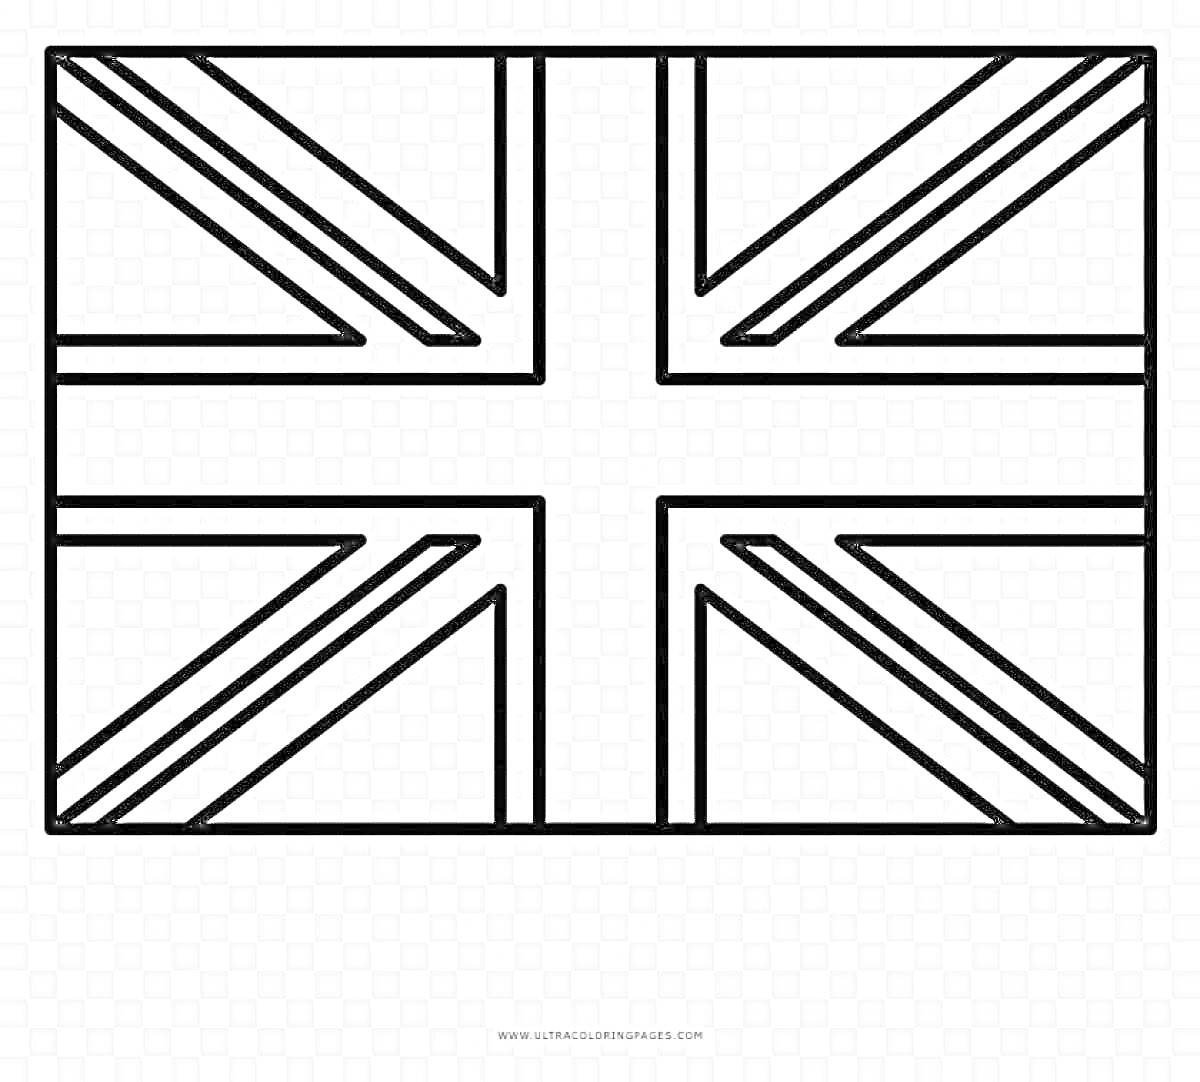 Раскраска Раскраска флаг Великобритании с черно-белыми линиями и геометрическим узором